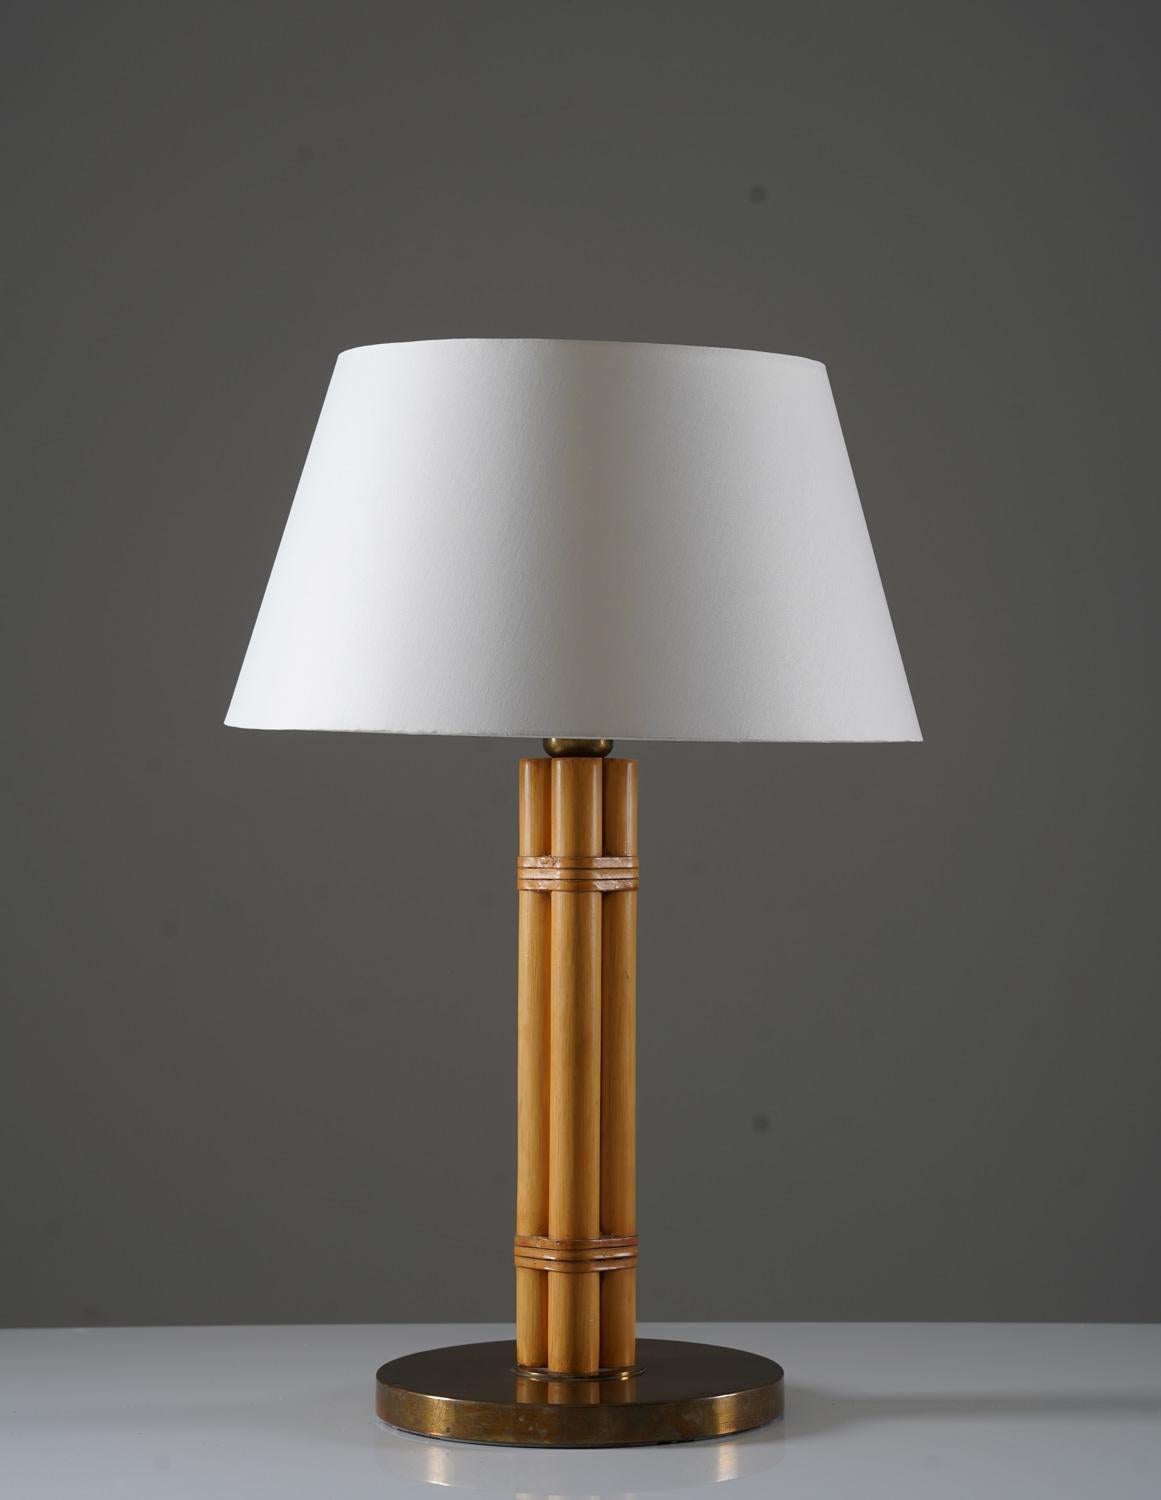 Skandinavische Tischleuchte aus Messing und Bambus von Bergboms, Schweden, 1960er Jahre.
Diese Lampe ist aus Bambus mit Details aus Messing und Leder gefertigt. Die Leuchte wird mit einem neuen hochwertigen Schirm aus cremeweißem Satinstoff